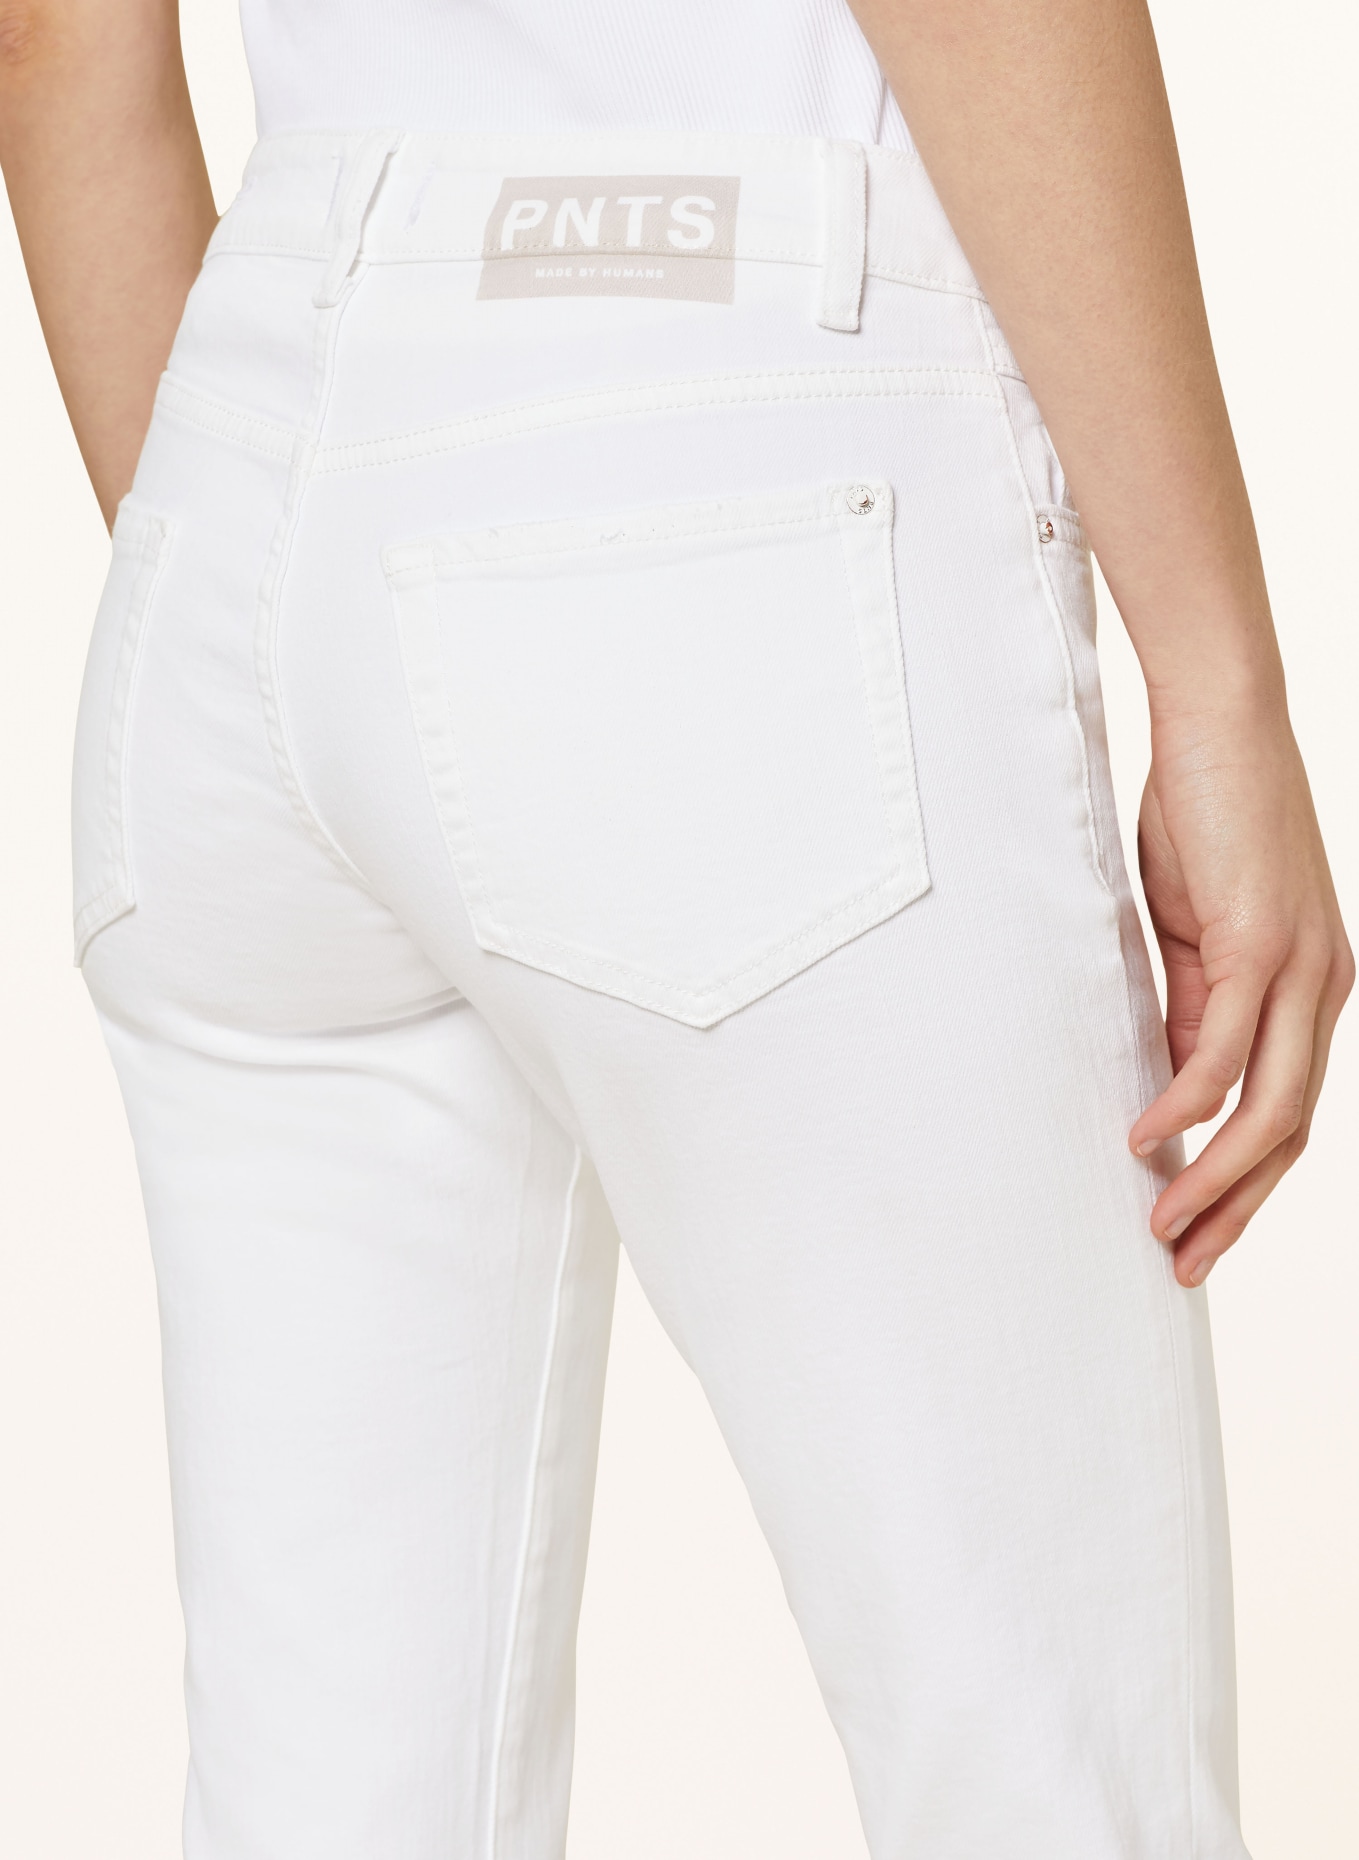 PNTS 7/8 jeans THE MINI B, Color: 99 SNOW WHITE (Image 5)